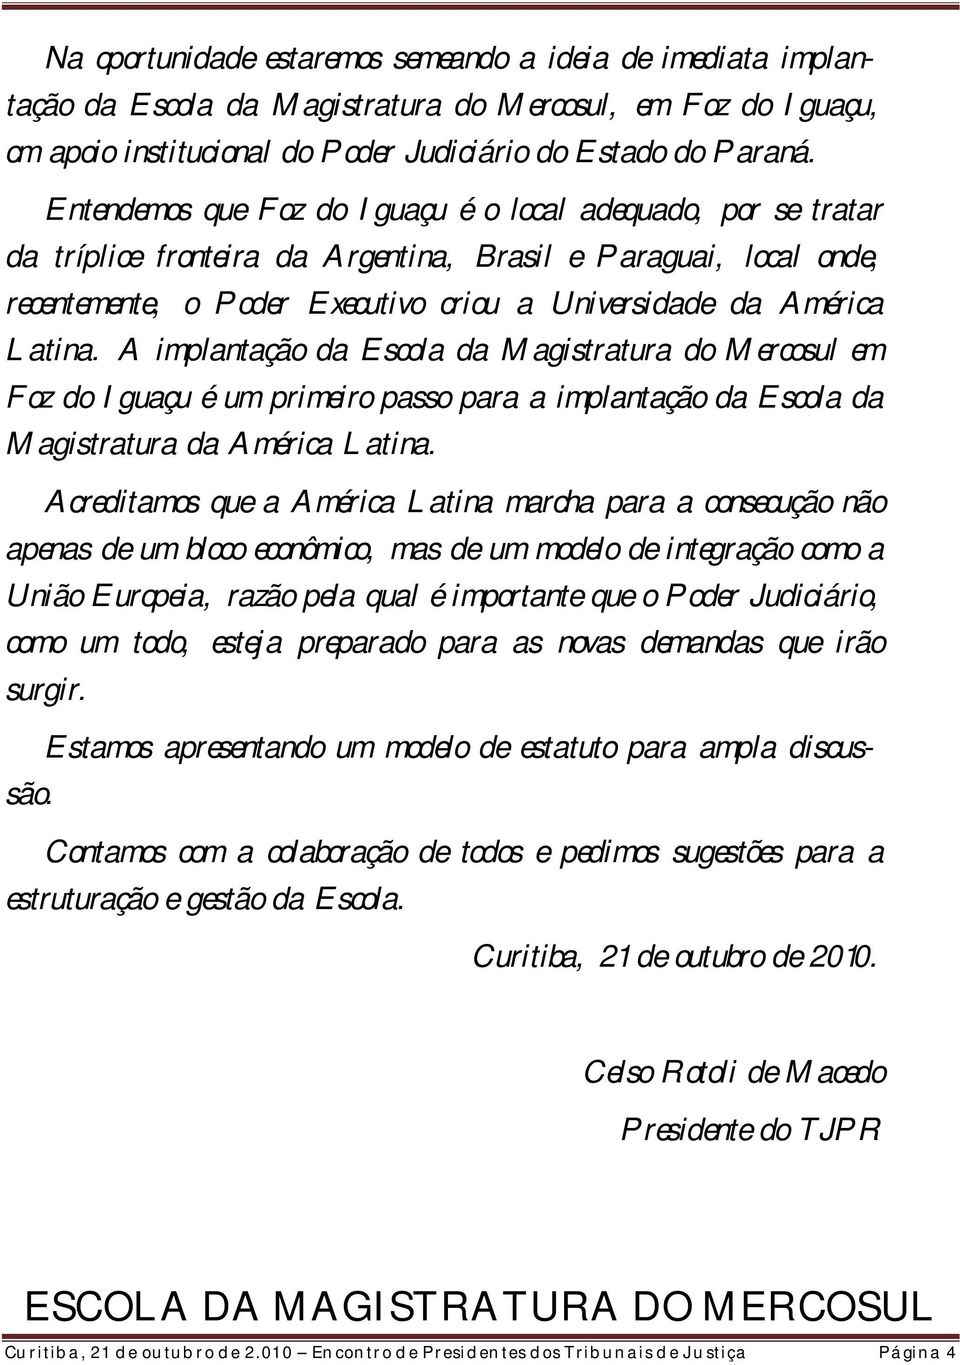 Latina. A implantação da Escola da Magistratura do Mercosul em Foz do Iguaçu é um primeiro passo para a implantação da Escola da Magistratura da América Latina.